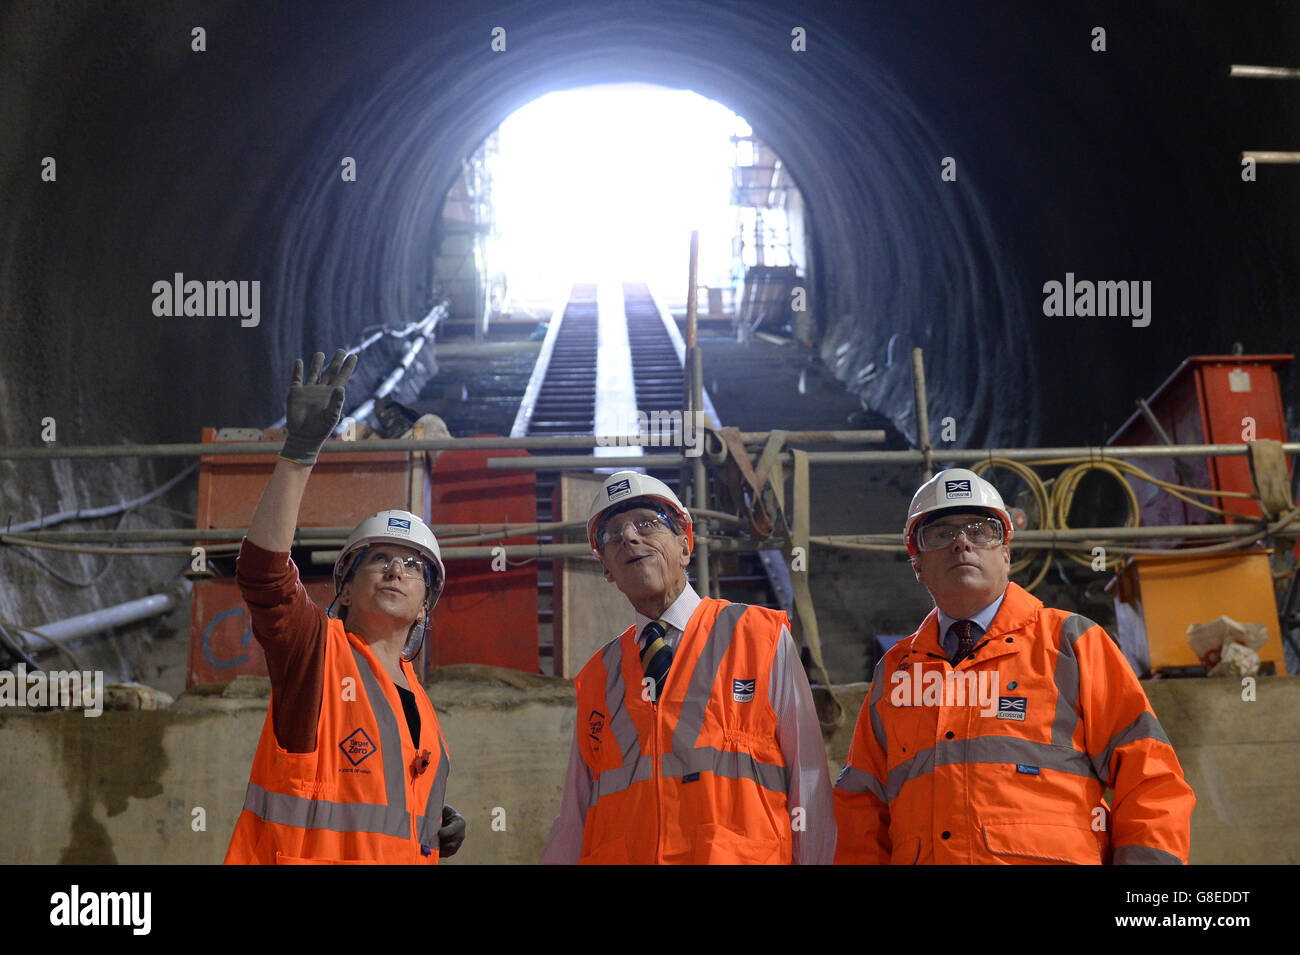 Der Duke of Edinburgh wird von Crossrail Chief Executive Andrew Wolstenholme (rechts) und Project Manager Linda Miller in der neuen Crossrail-Station gezeigt, die 30 Meter unterhalb von Farringdon in London Gestalt annimmt. Stockfoto